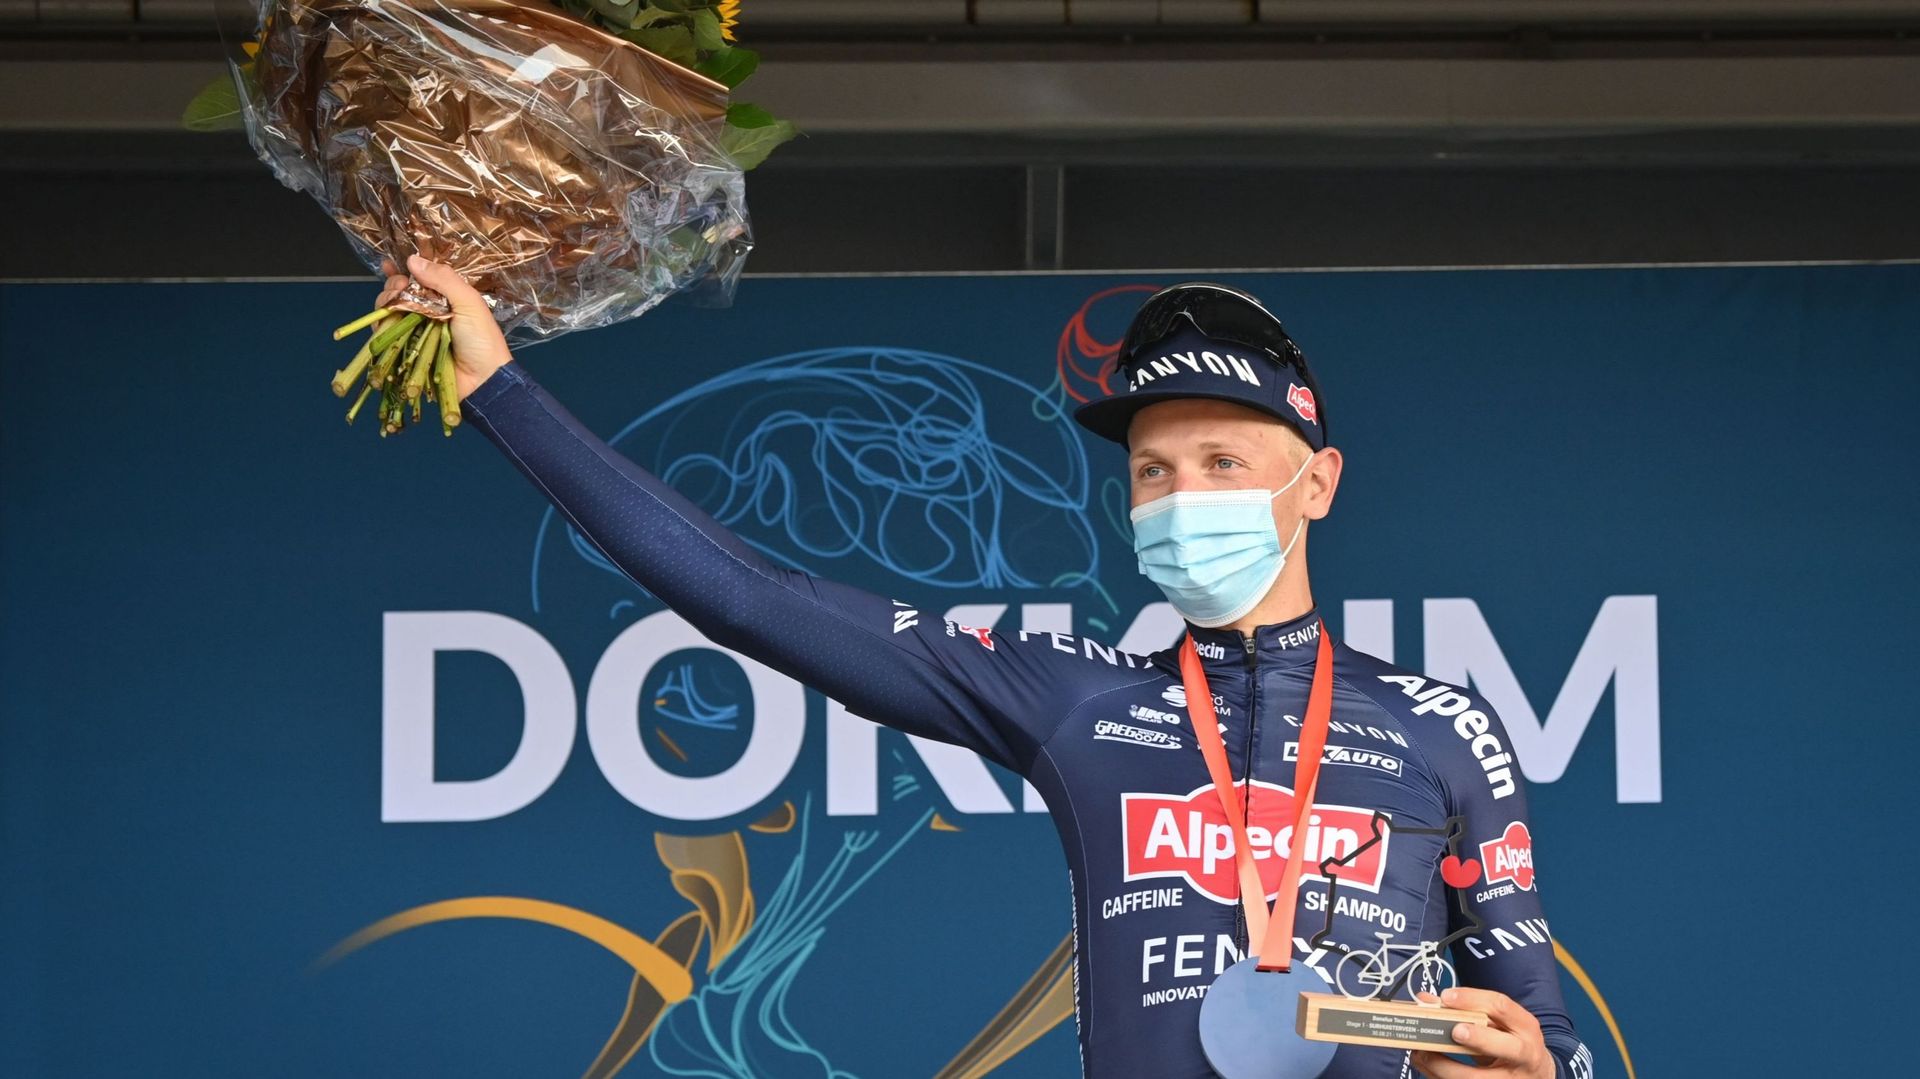 Tim Merlier vit une saison faste. L’ancien champion de Belgique, déjà vainqueur sur les routes du Giro et du Tour de France, a remporté lundi la 1re étape du Tour du Benelux (WorldTour) à Dokkum, son 8e succès en 2021.